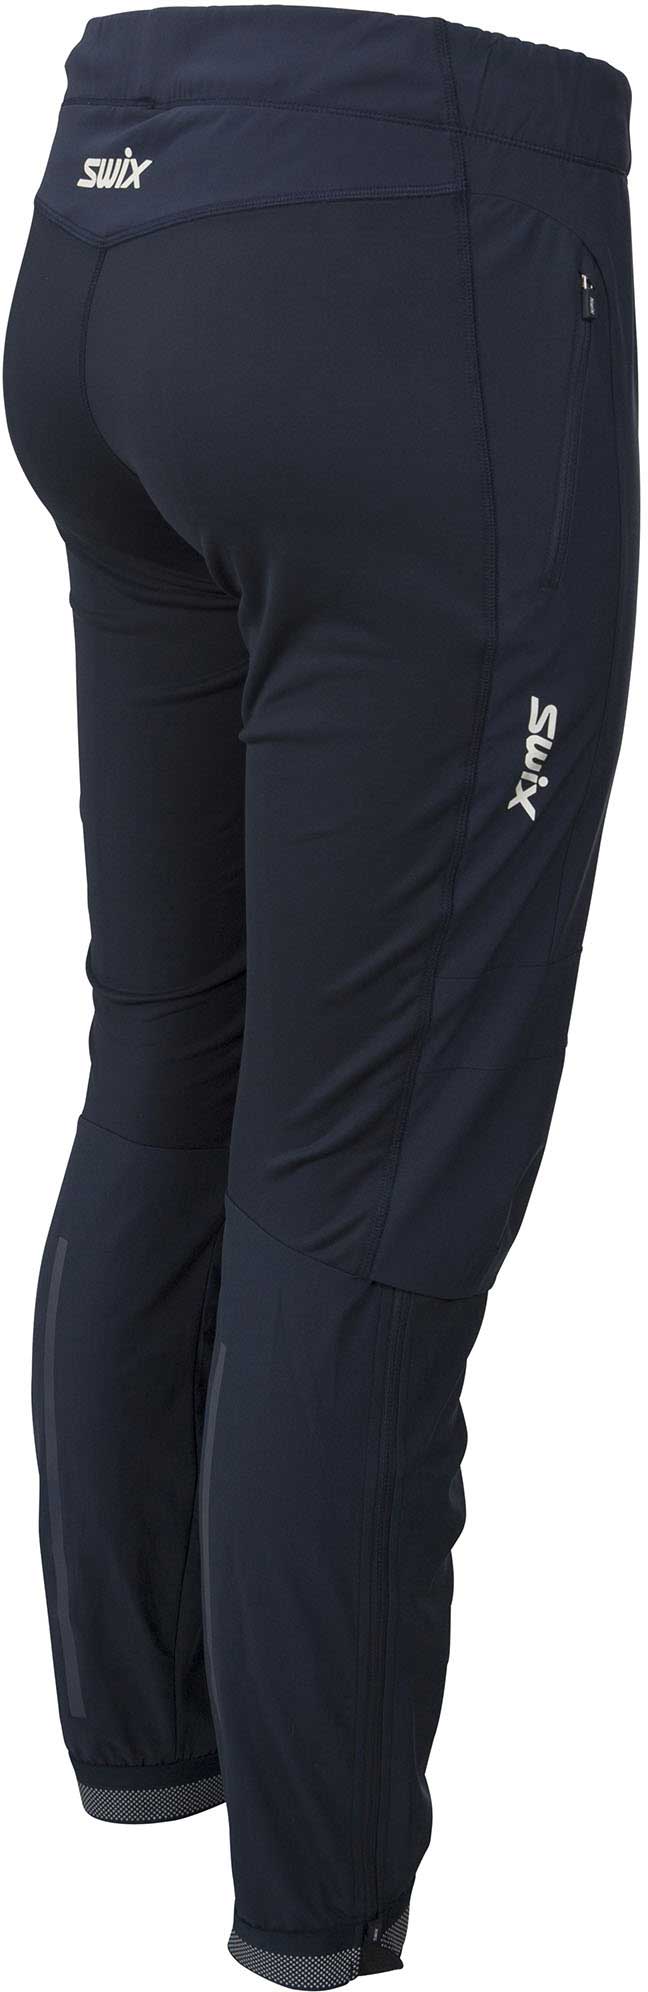 Дамски панталони за ски бягане